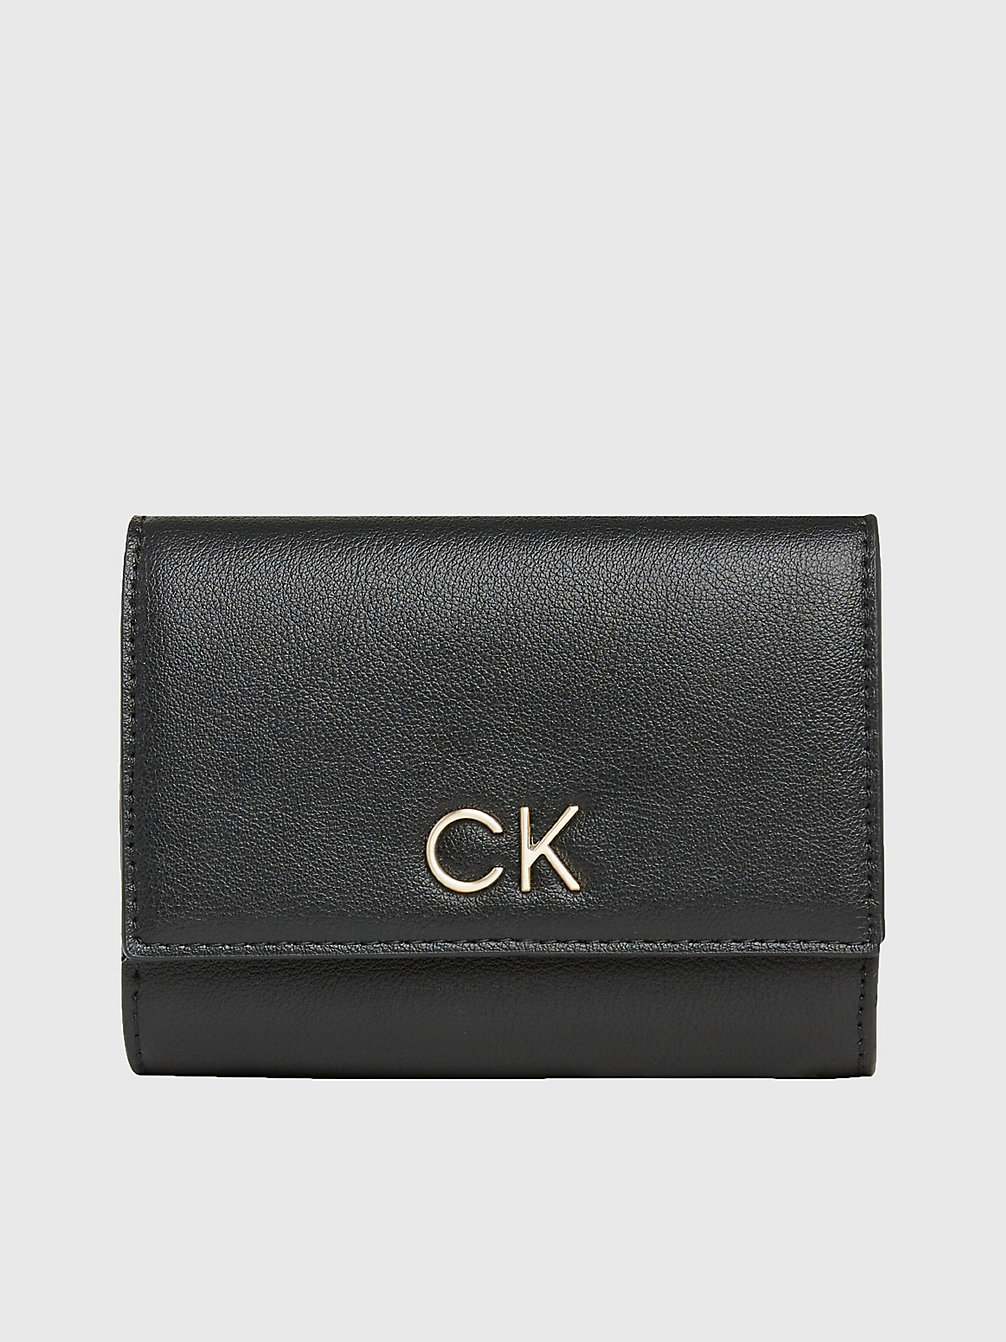 CK BLACK > Dreifach Faltbares Portemonnaie Aus Recyceltem Material > undefined Damen - Calvin Klein